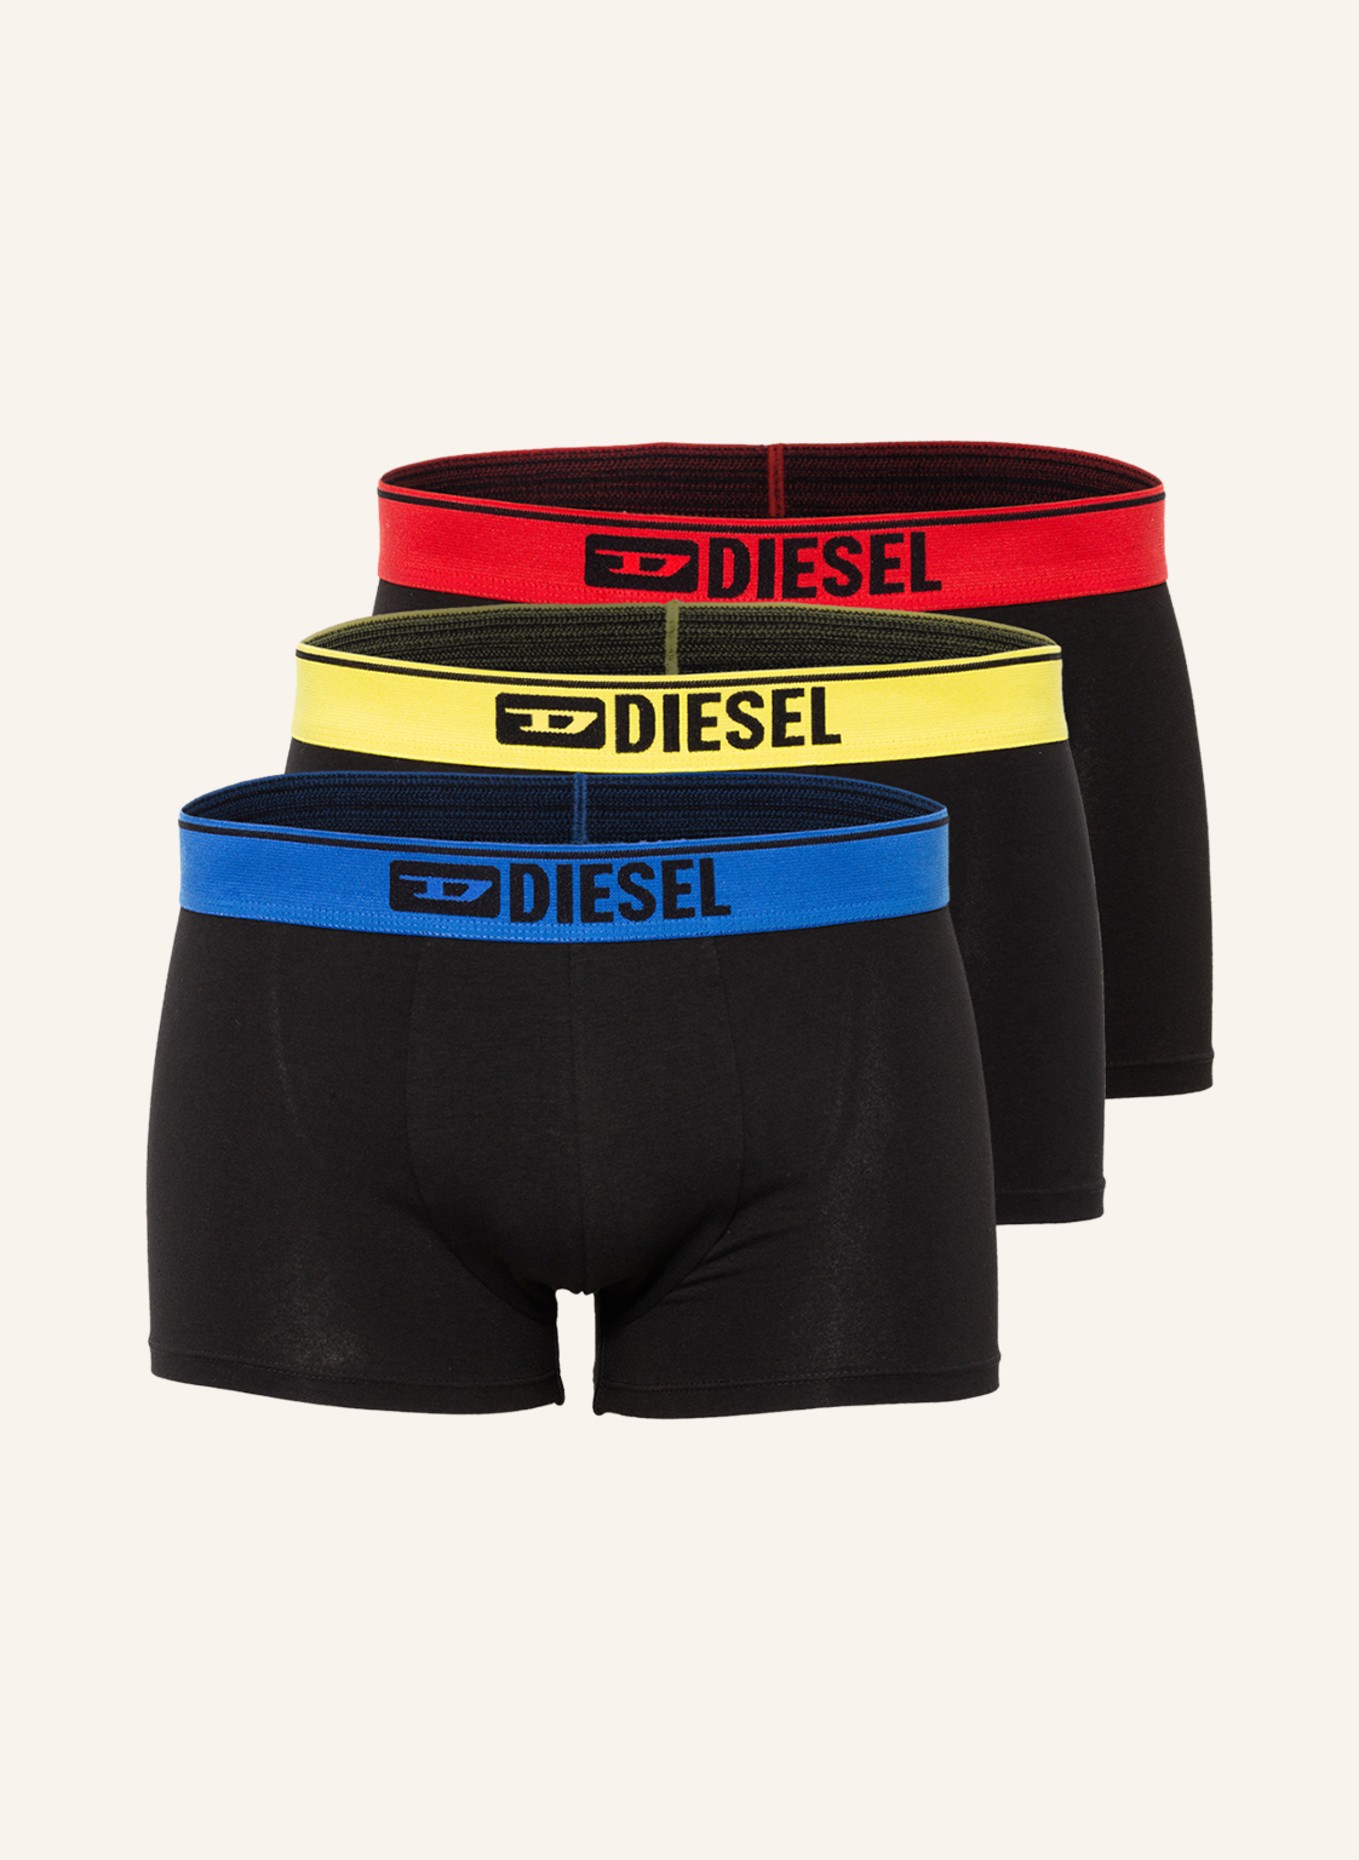 DIESEL 3-pack boxer shorts DAMIEN, Color: BLACK (Image 1)